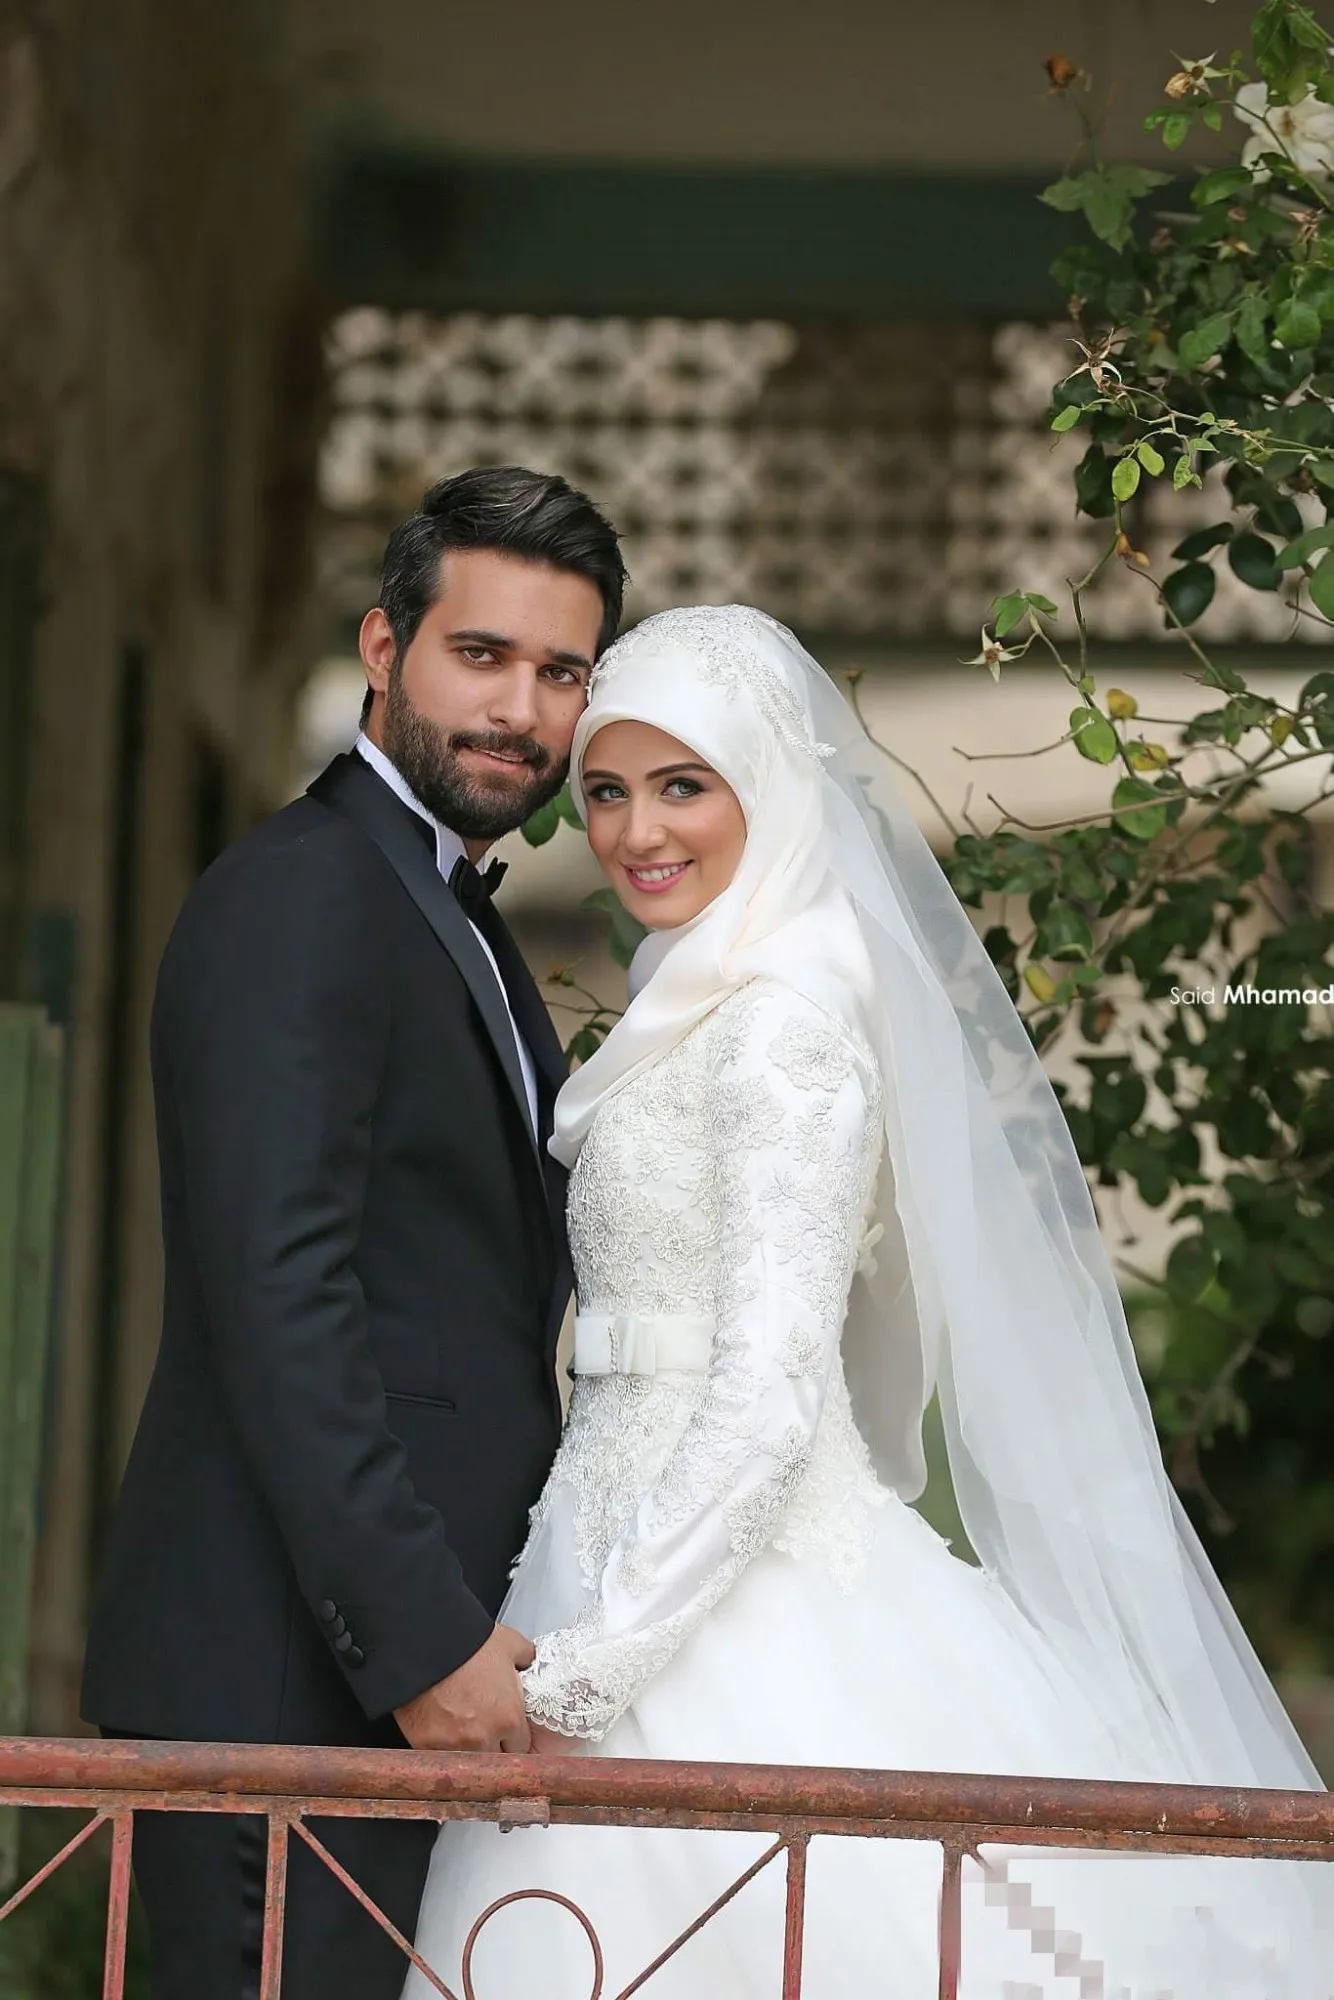 Мусульманские свадебные платья Саид Мхамад Кружевные зимние свадебные платья с длинными рукавами и высоким воротом в арабском исламском стиле свадебное платье трапециевидной формы